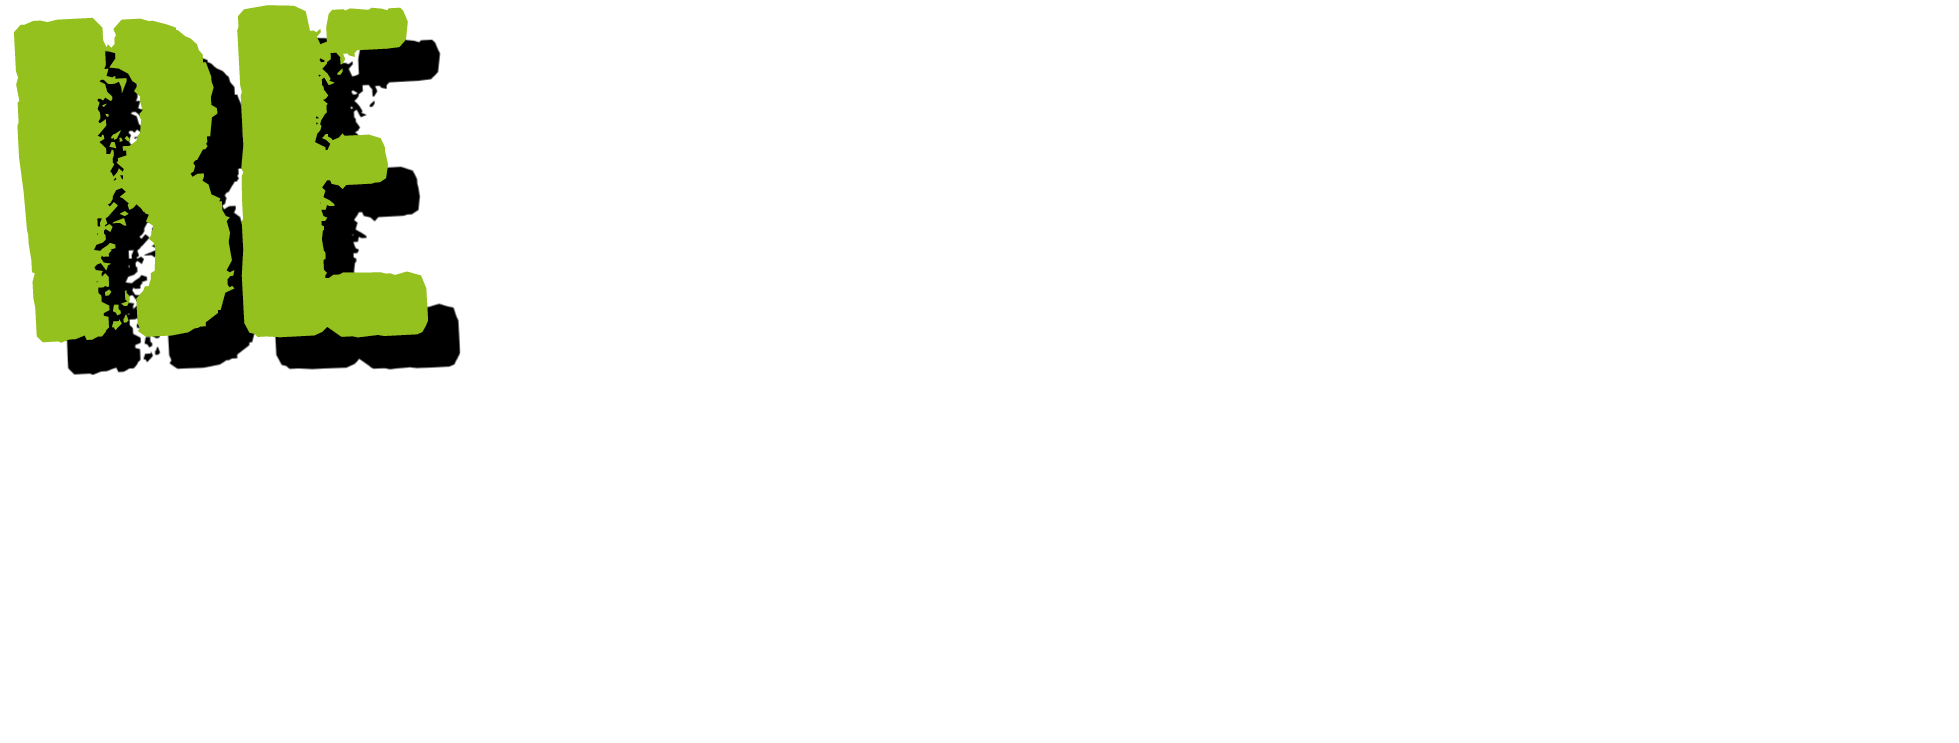 OCB